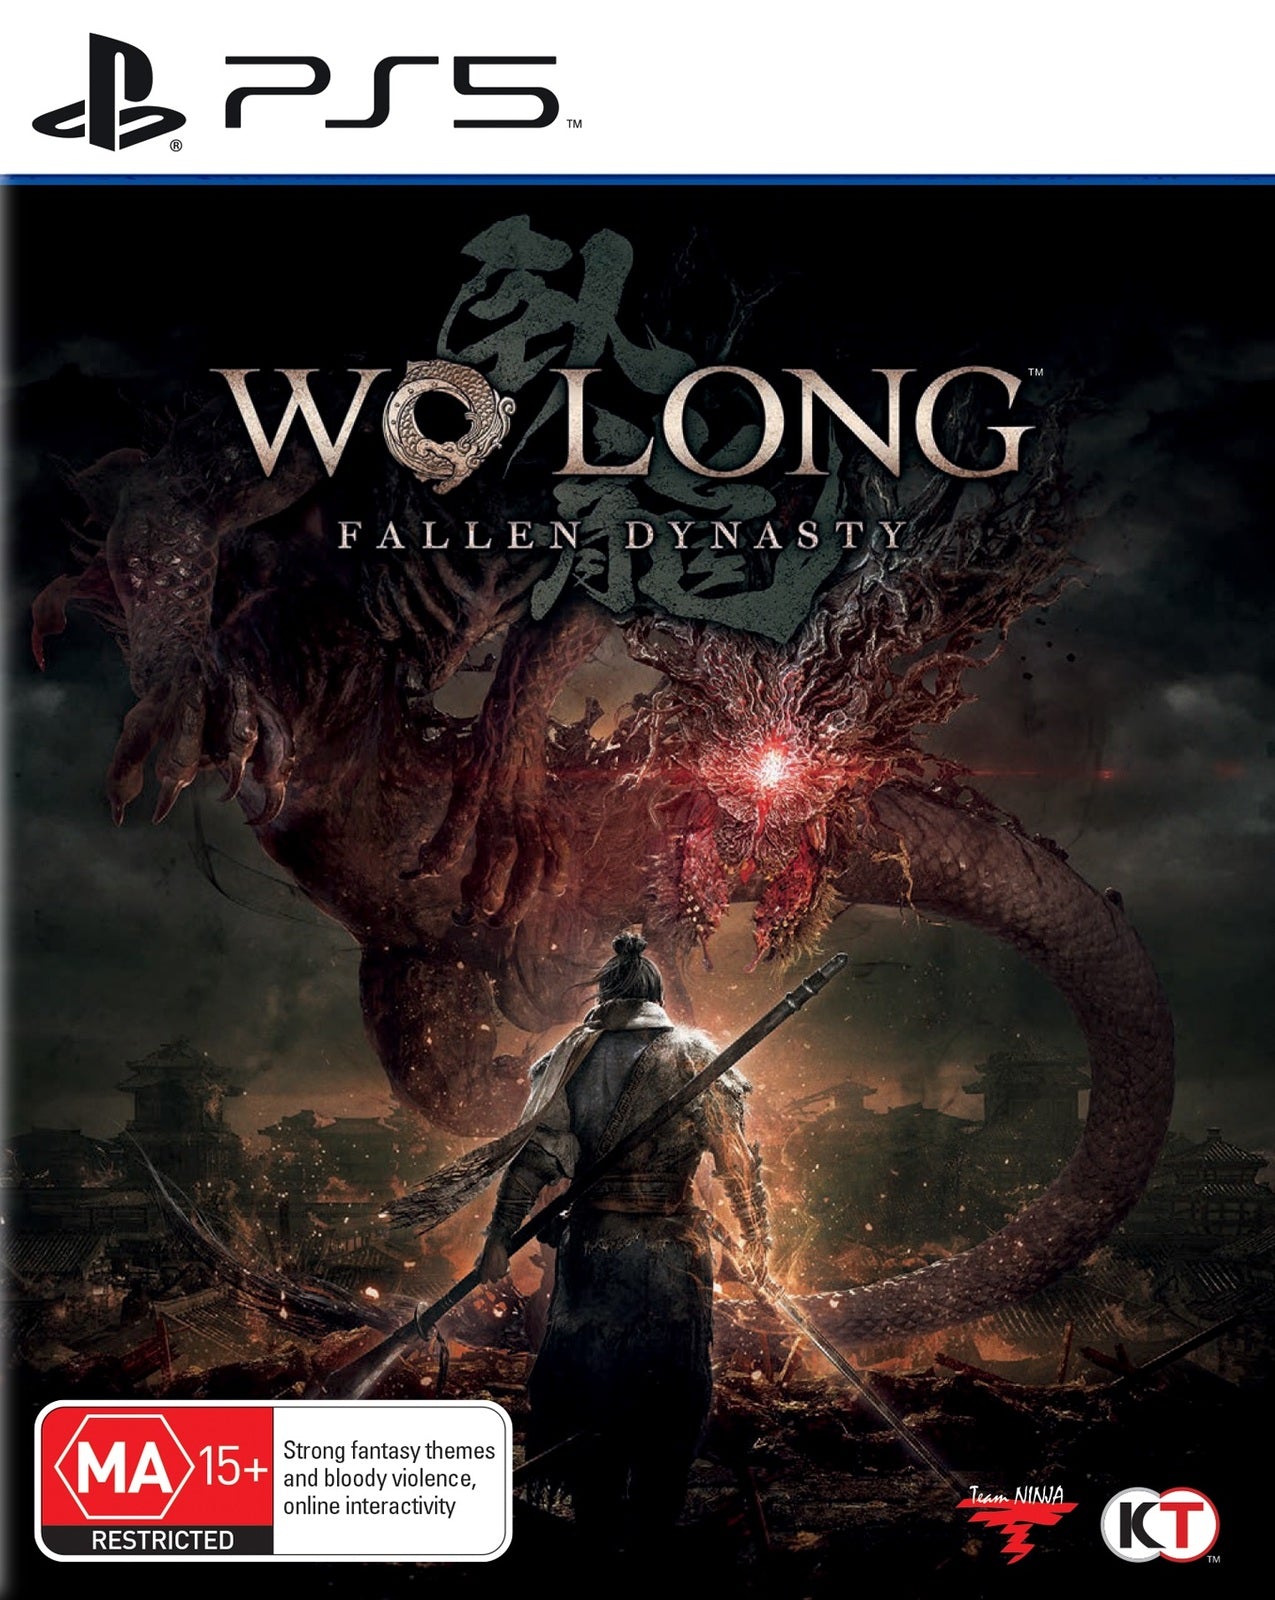 Wo Long： Fallen（ウォーロン フォールン ダイナスティ） PS4】